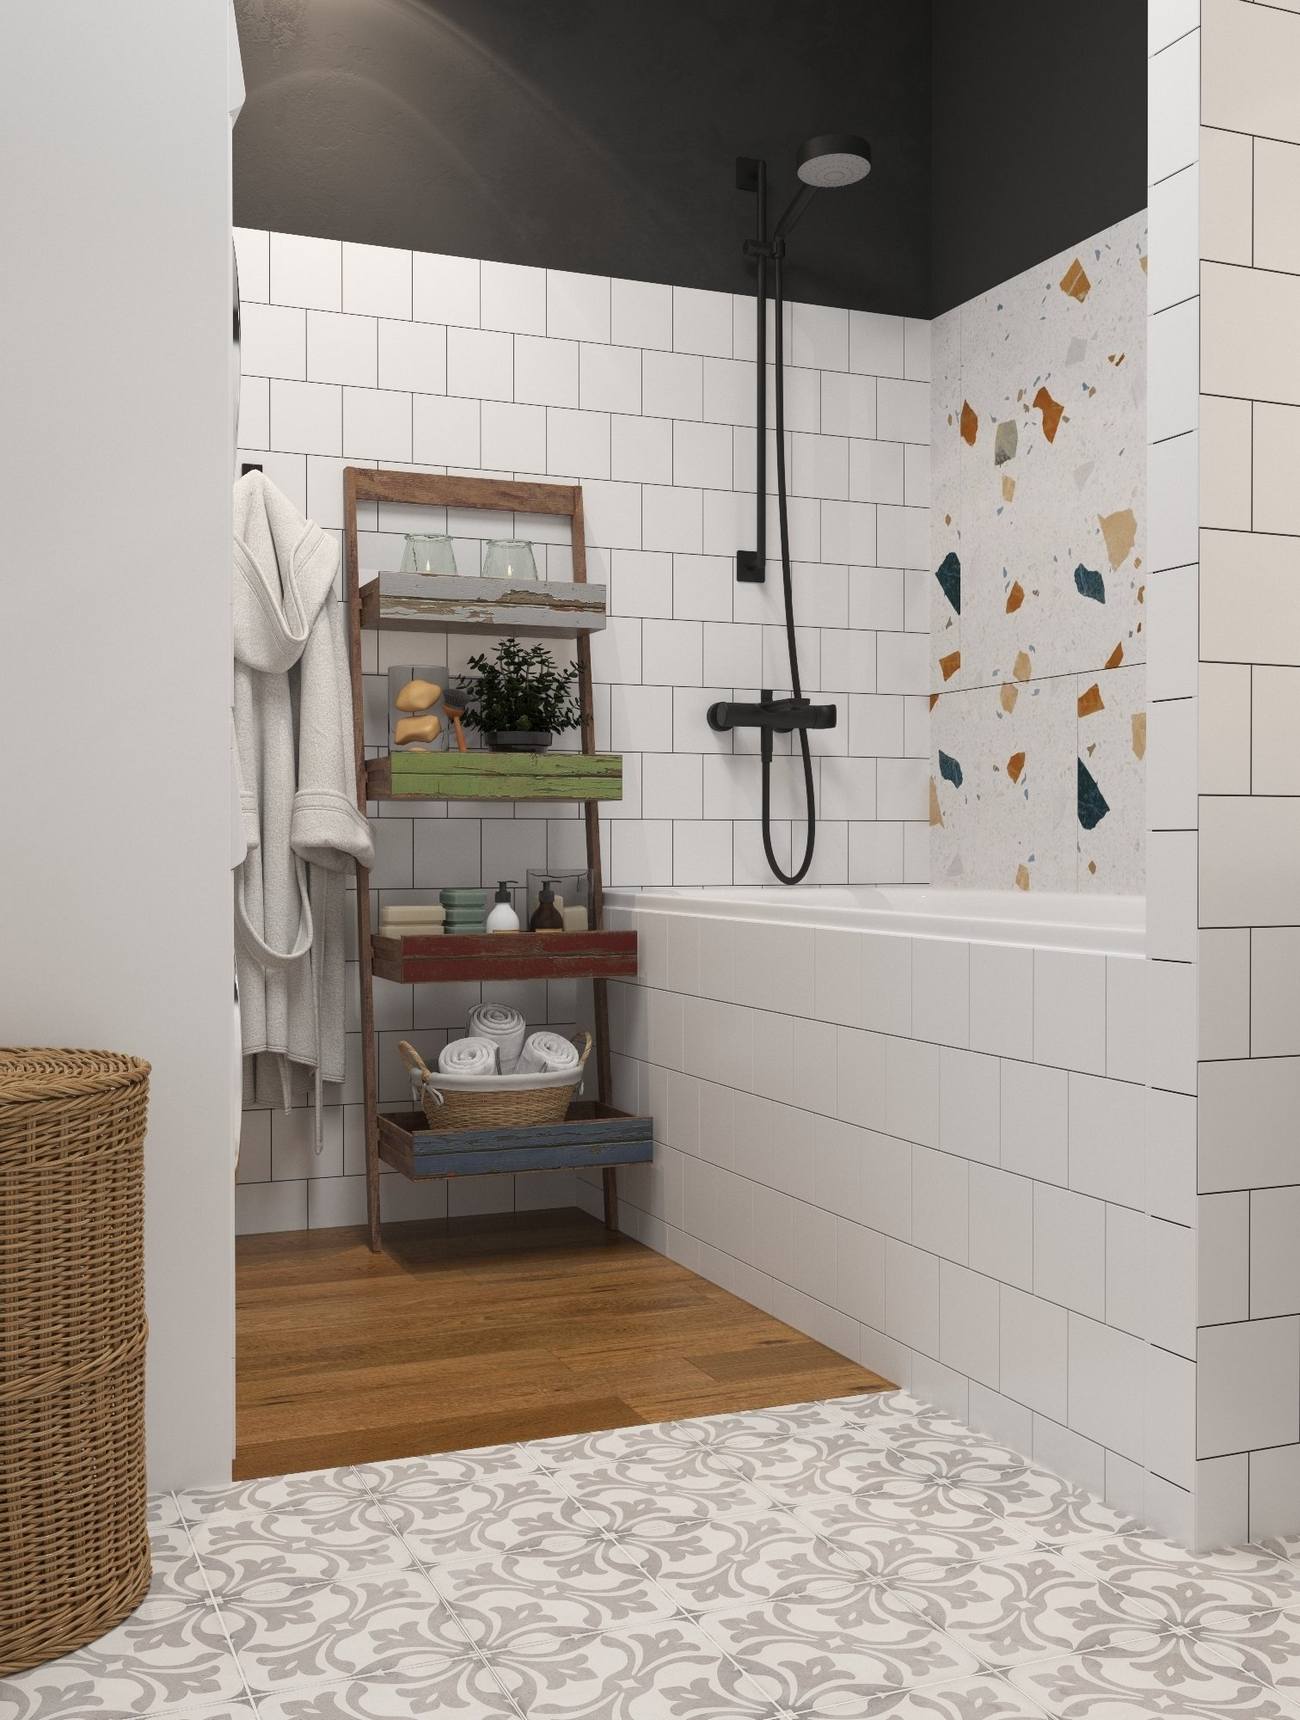 Phòng tắm là sự kết hợp của rất nhiều màu sắc: Phần trên tường nối với trần nhà sơn màu đen tạo chiều sâu nổi bật trên nền tường trắng. Ngay cả trên sàn nhà cũng phân vùng toilet và phòng tắm bằng gạch bông và gỗ lát sàn.